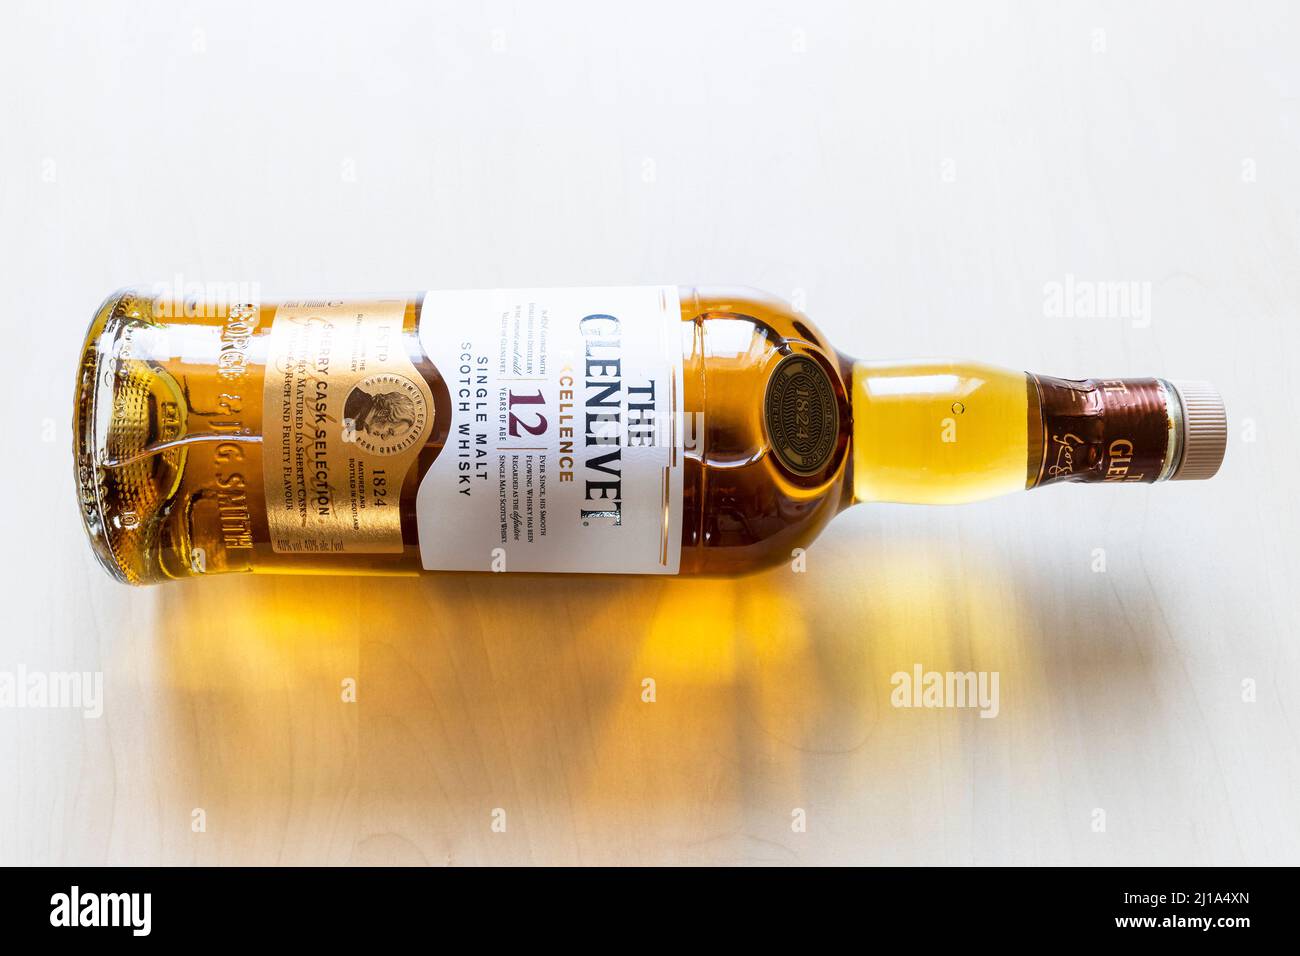 Moskau, Russland - 20. März 2022: Flasche 12 Jahre alten Glenlivet Single Malt Scotch Whisky auf blassen Tisch liegen. Glenlivet wurde 1 gegründet Stockfoto